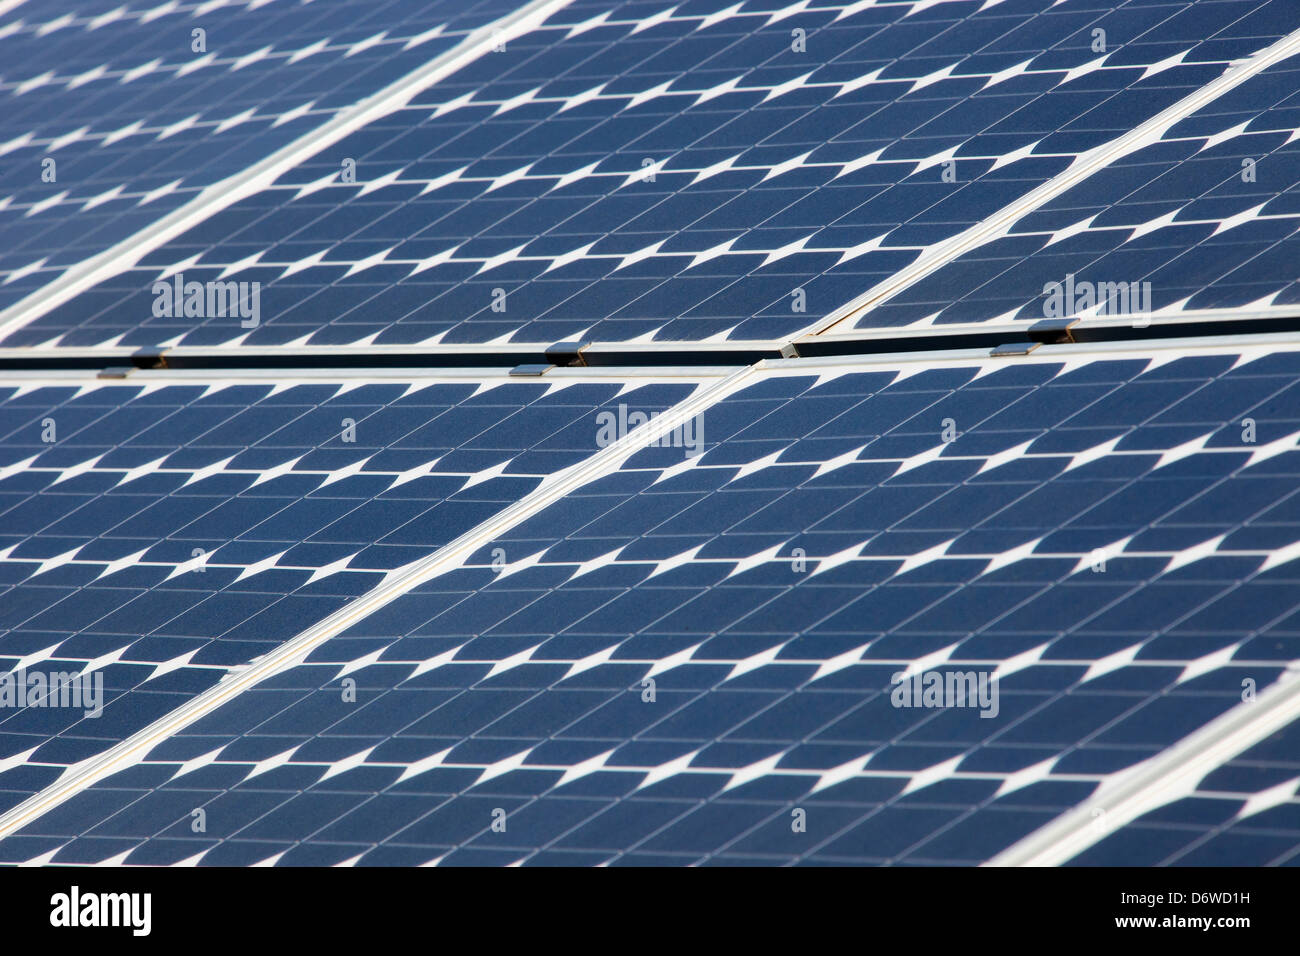 Centrale solaire, électricité, panneaux solaires, Vulci, lazio, Italie, Europe Banque D'Images